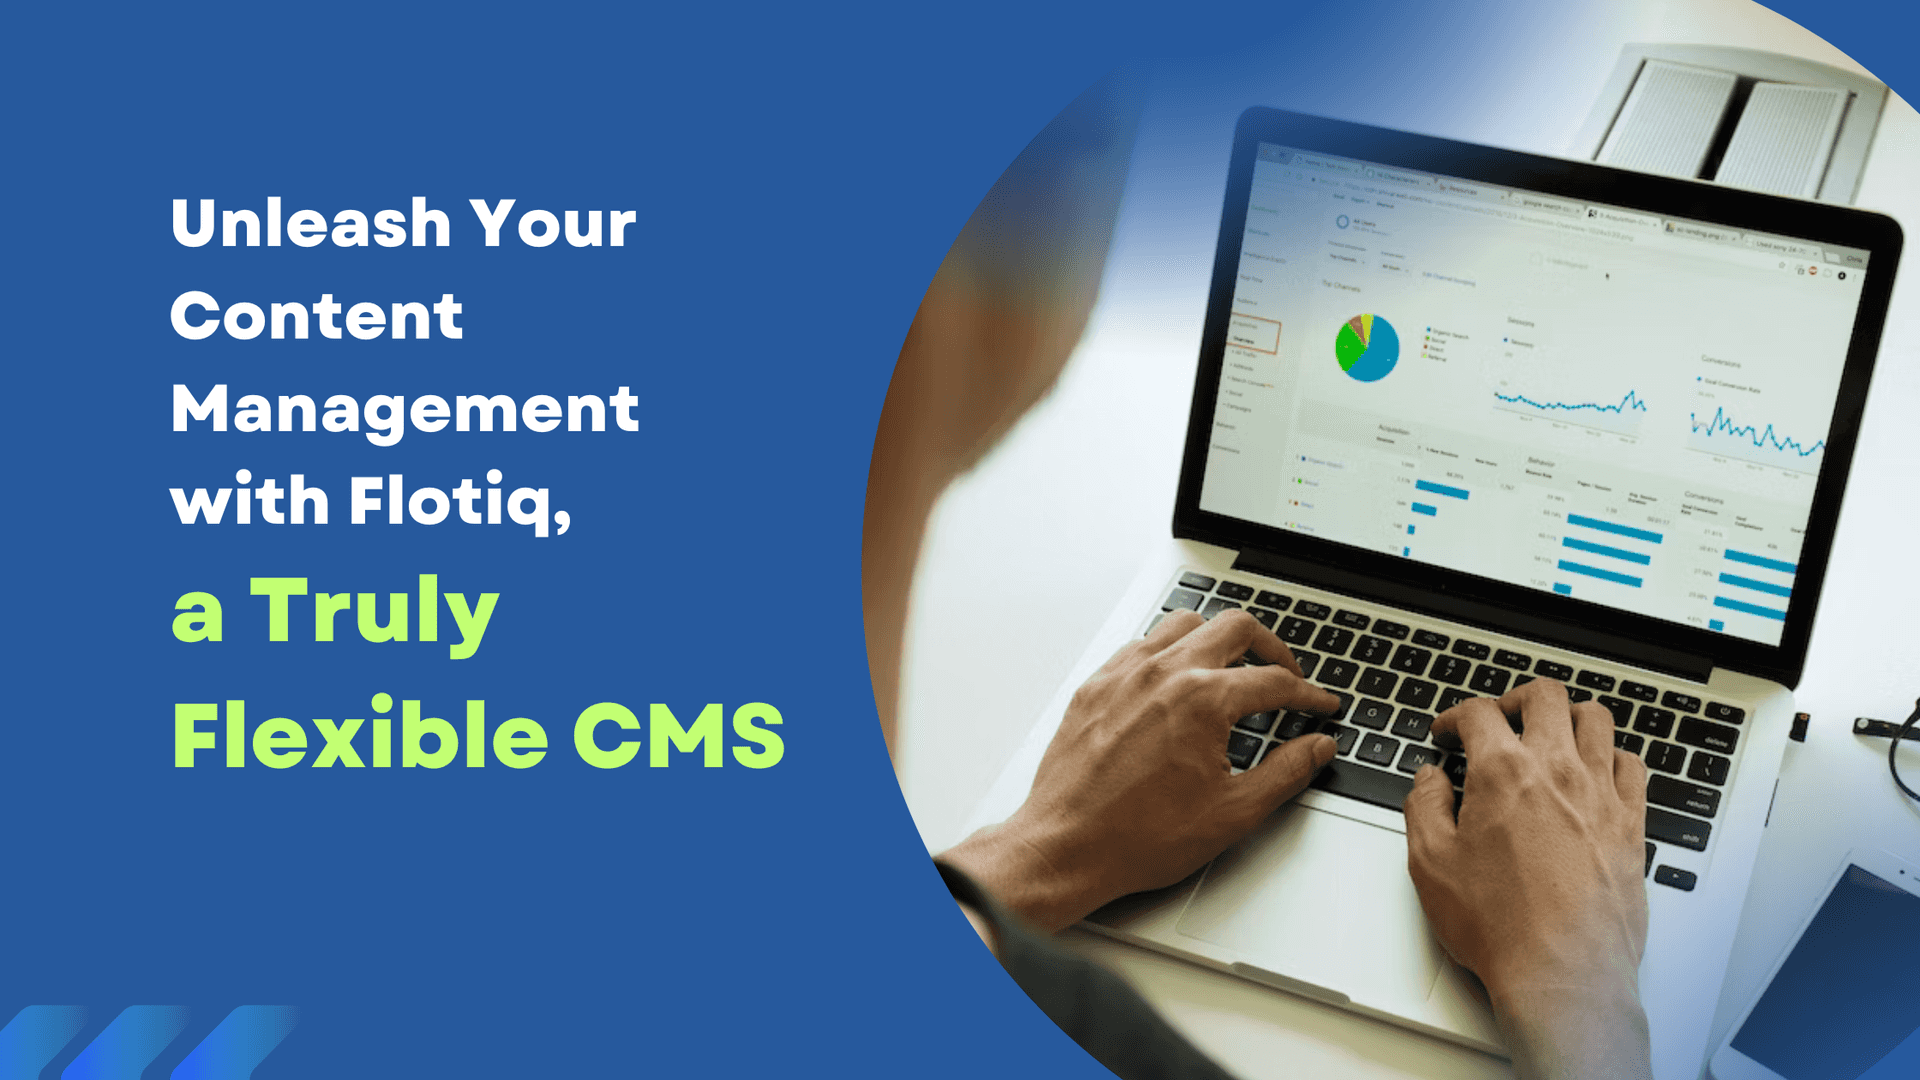 Unleash Your Content Management with Flotiq, a Flexible CMS